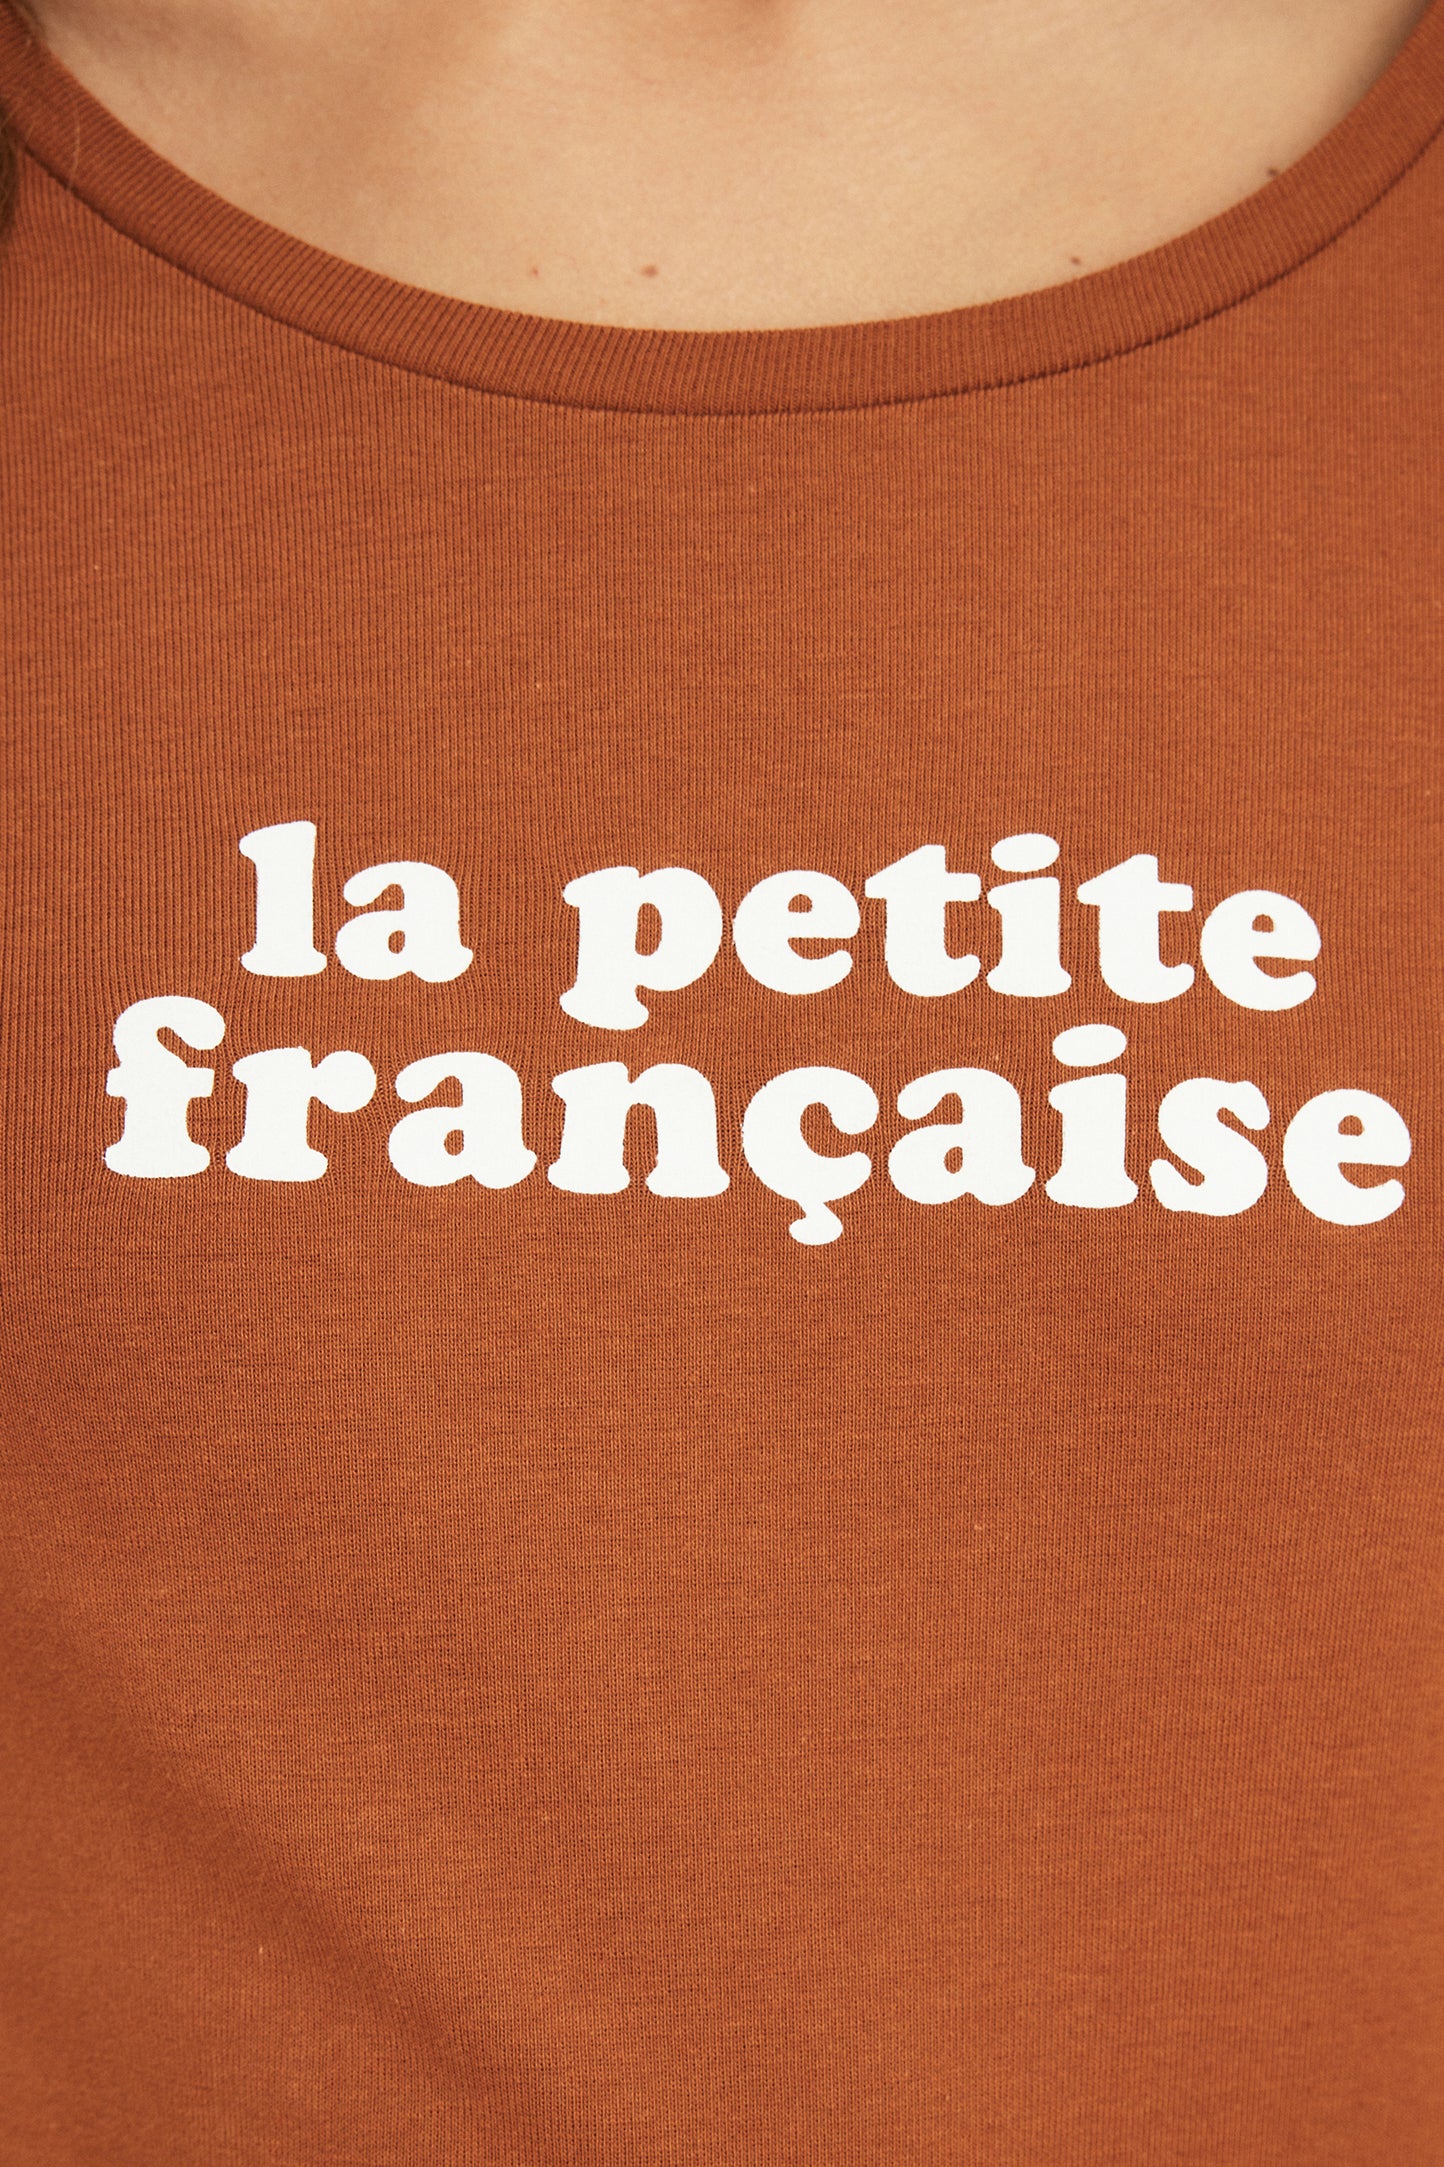 La Petite Française - T-shirt Tremplin